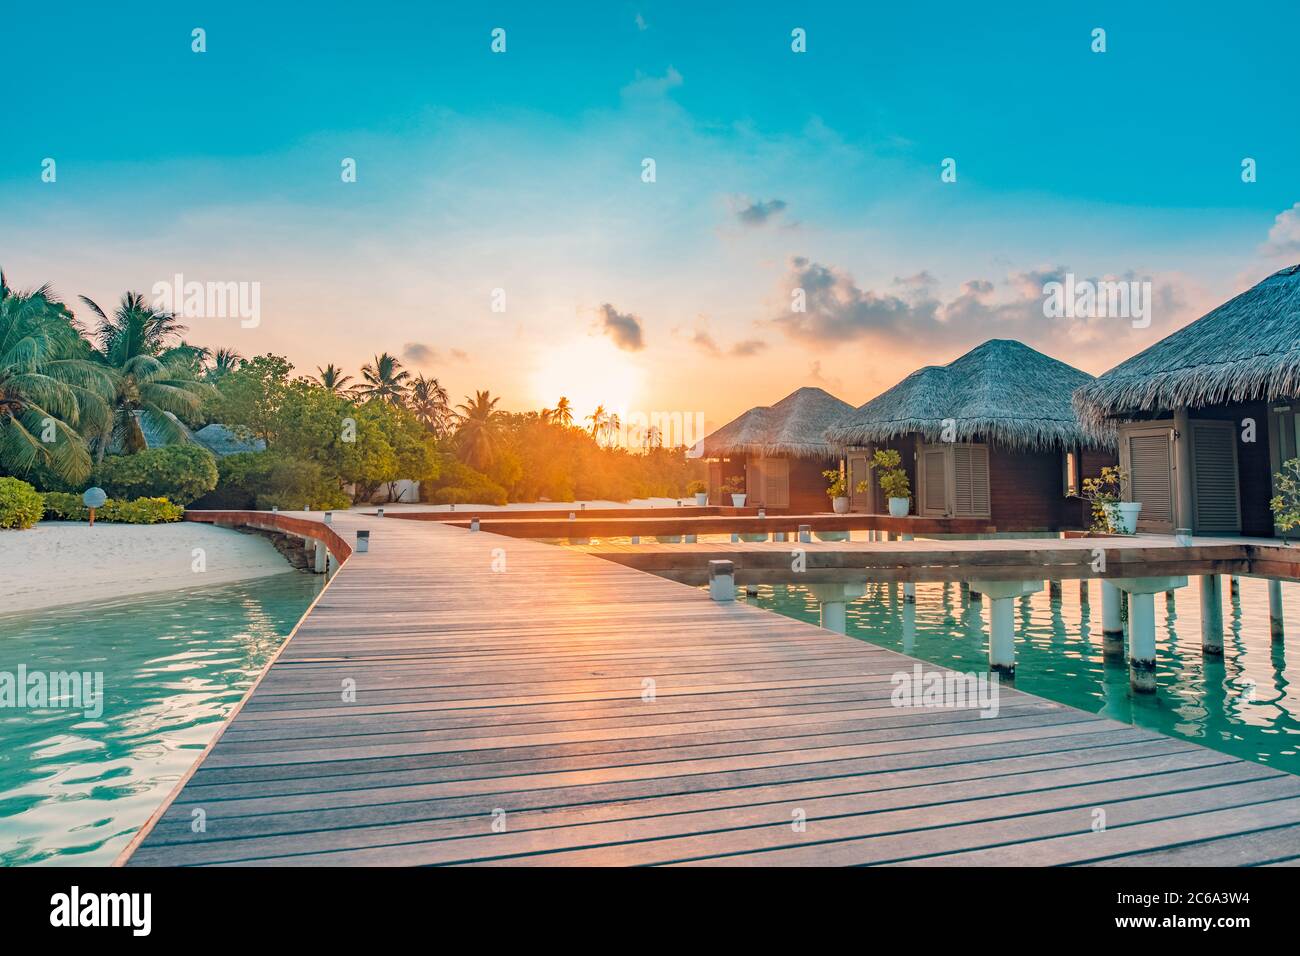 Paesaggio di viaggio incredibile. Tramonto sull'isola delle Maldive, resort di lusso con ville d'acqua e molo in legno. Cielo e nuvole e sfondo della spiaggia Foto Stock